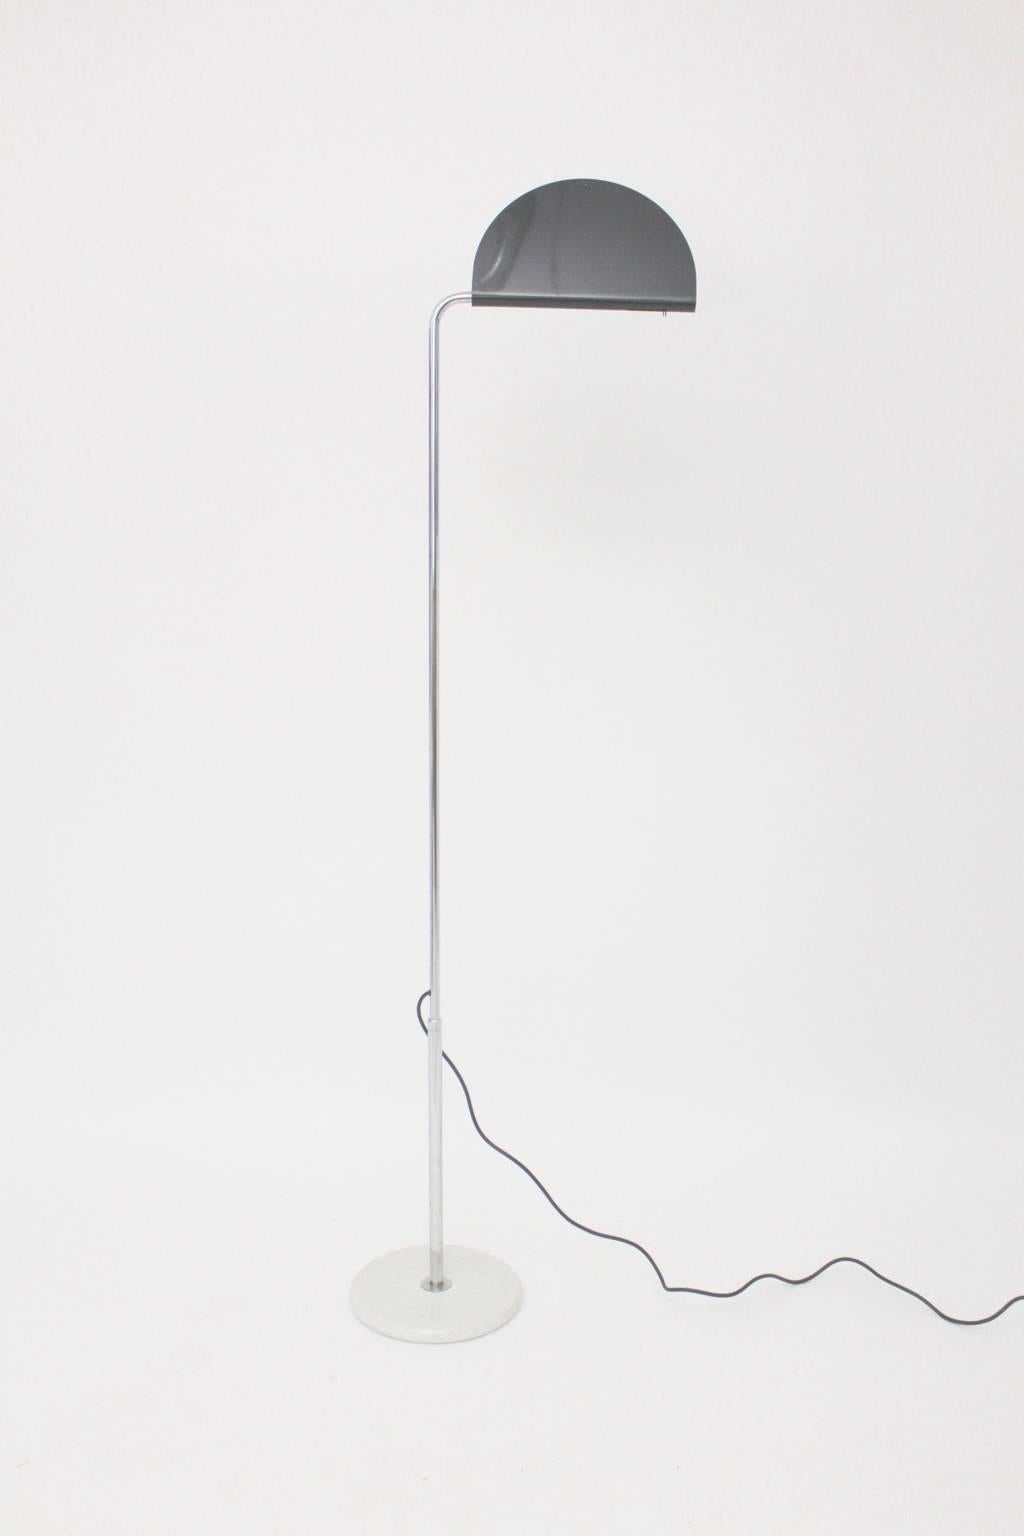 Ce lampadaire présenté, nommé Mezzaluna, a été conçu par Bruno Gecchelin Italie 1974 et a été produit par Skipper Milano, Italie.
Ce lampadaire se compose d'une tige en acier tubulaire chromé, réglable en hauteur de 178,5 cm à 215 cm, d'une base en